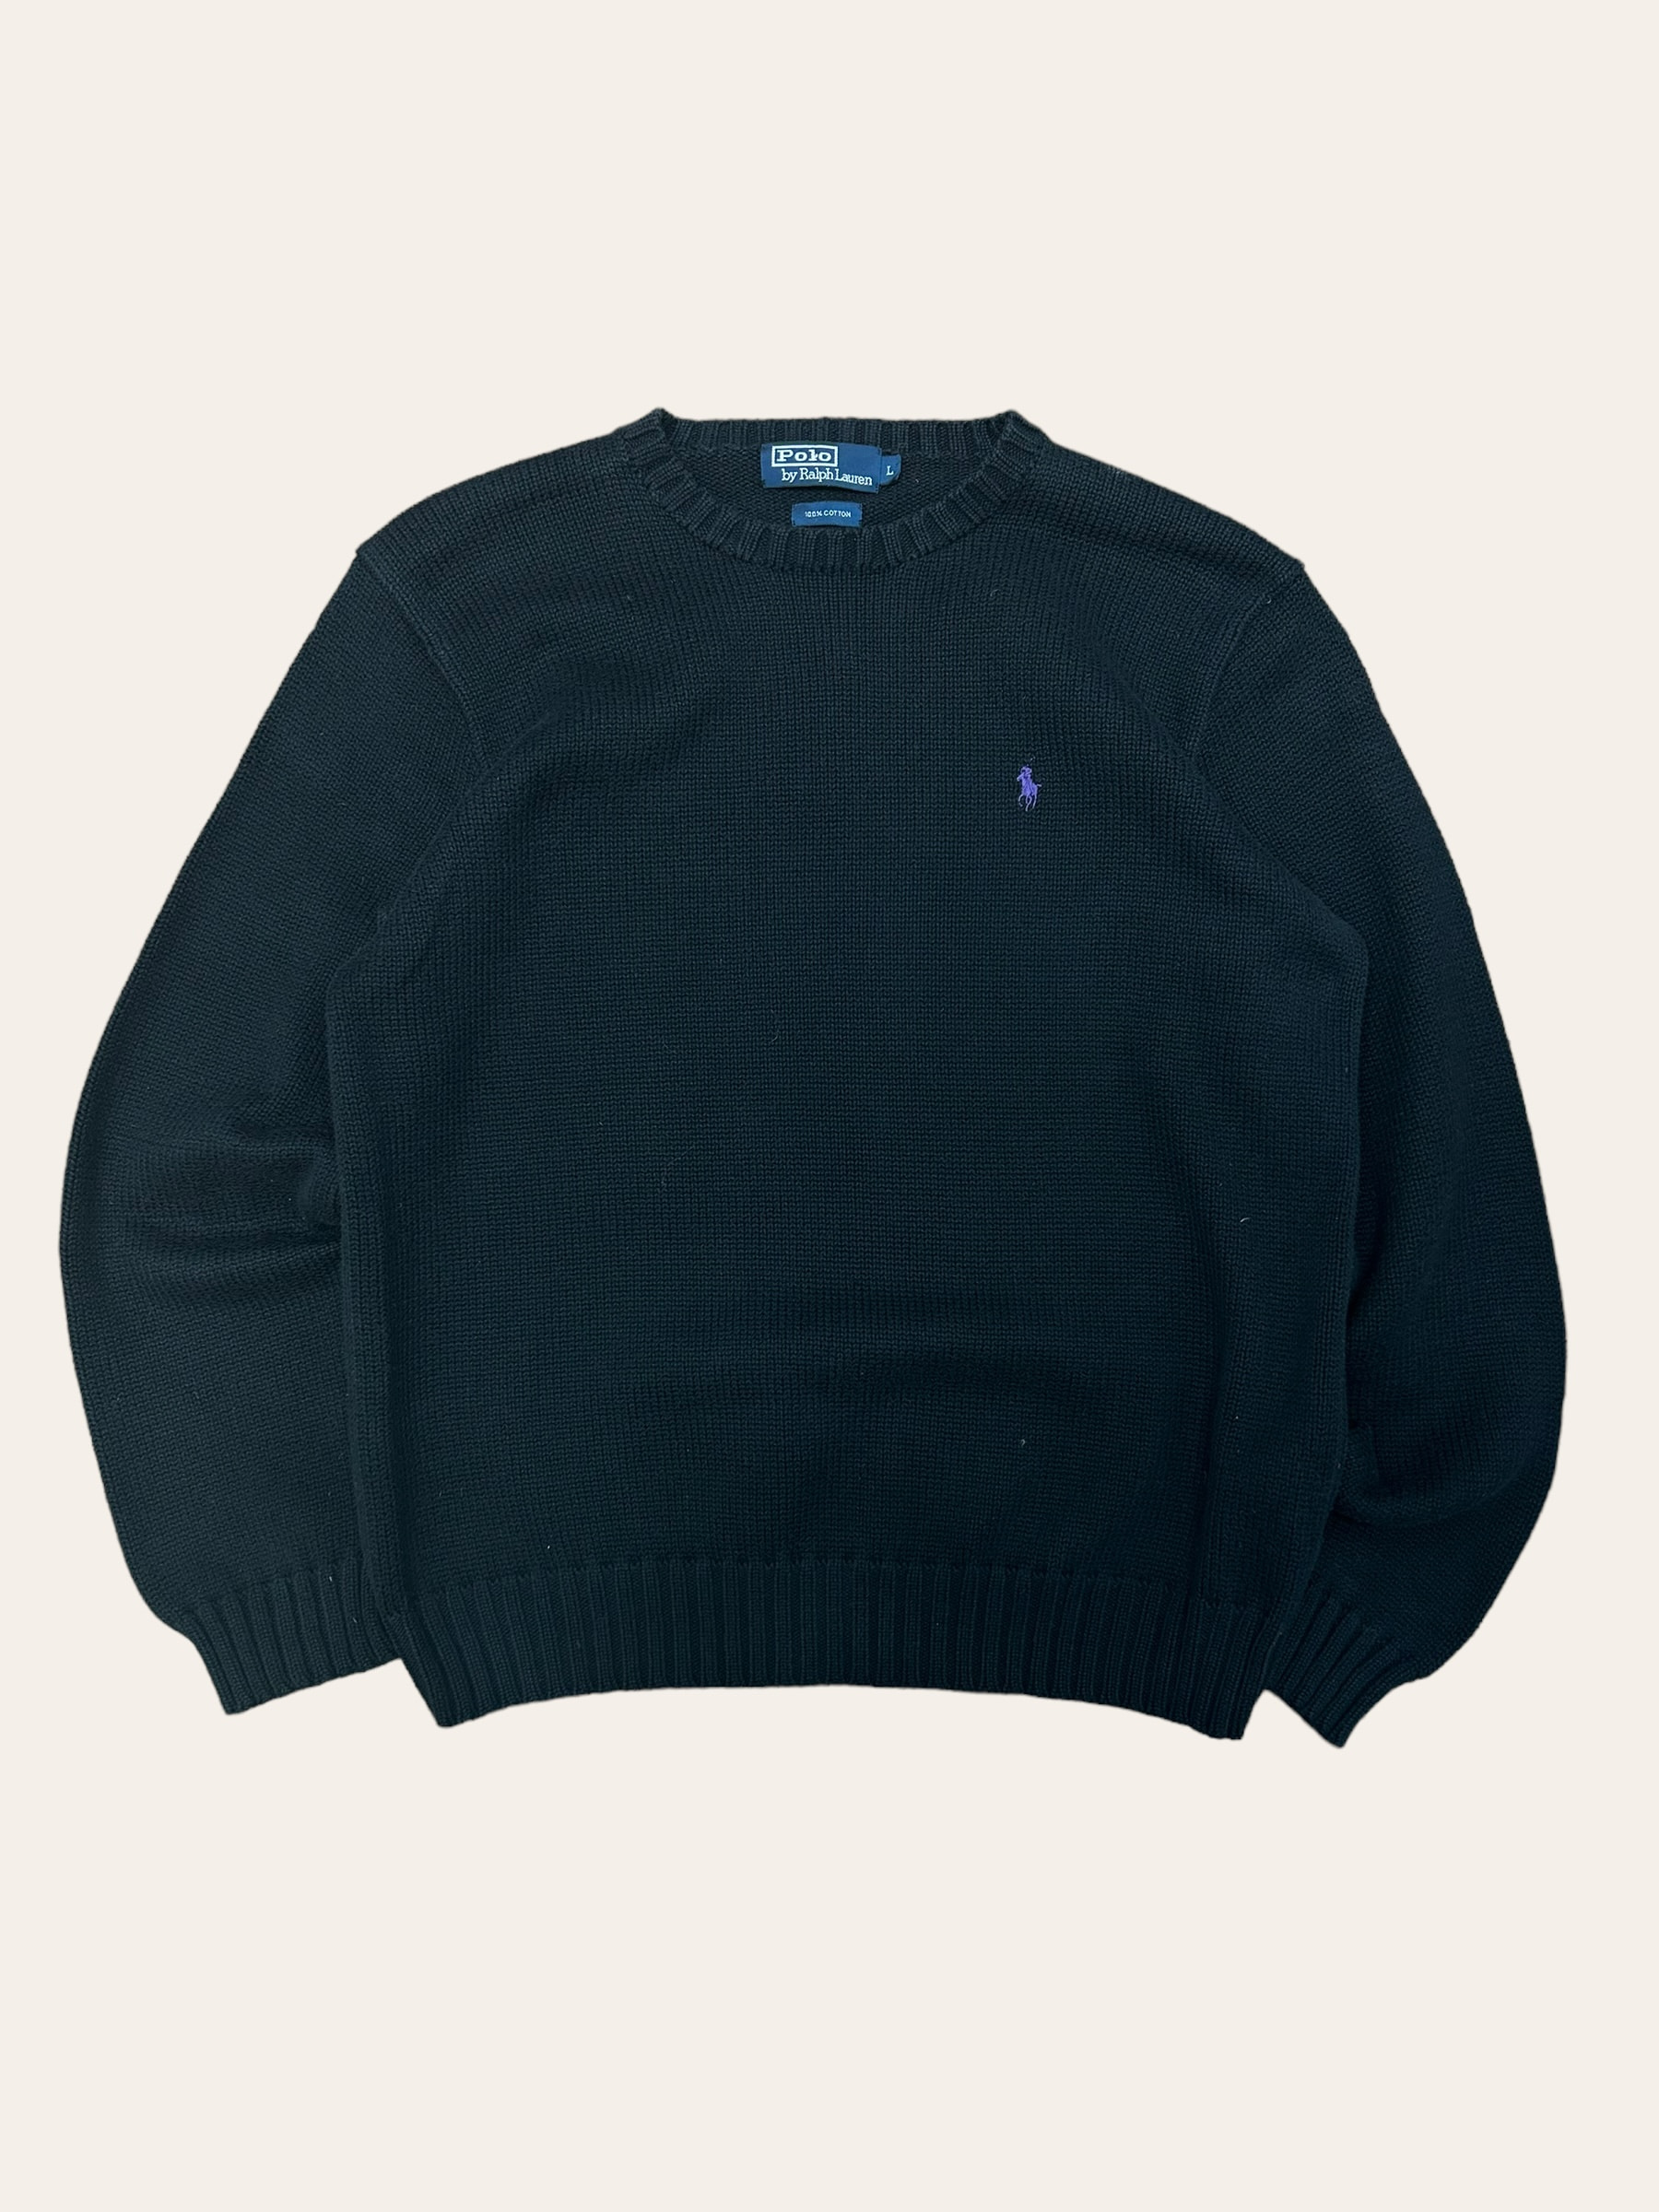 Polo ralph lauren black color cotton crewneck sweater L